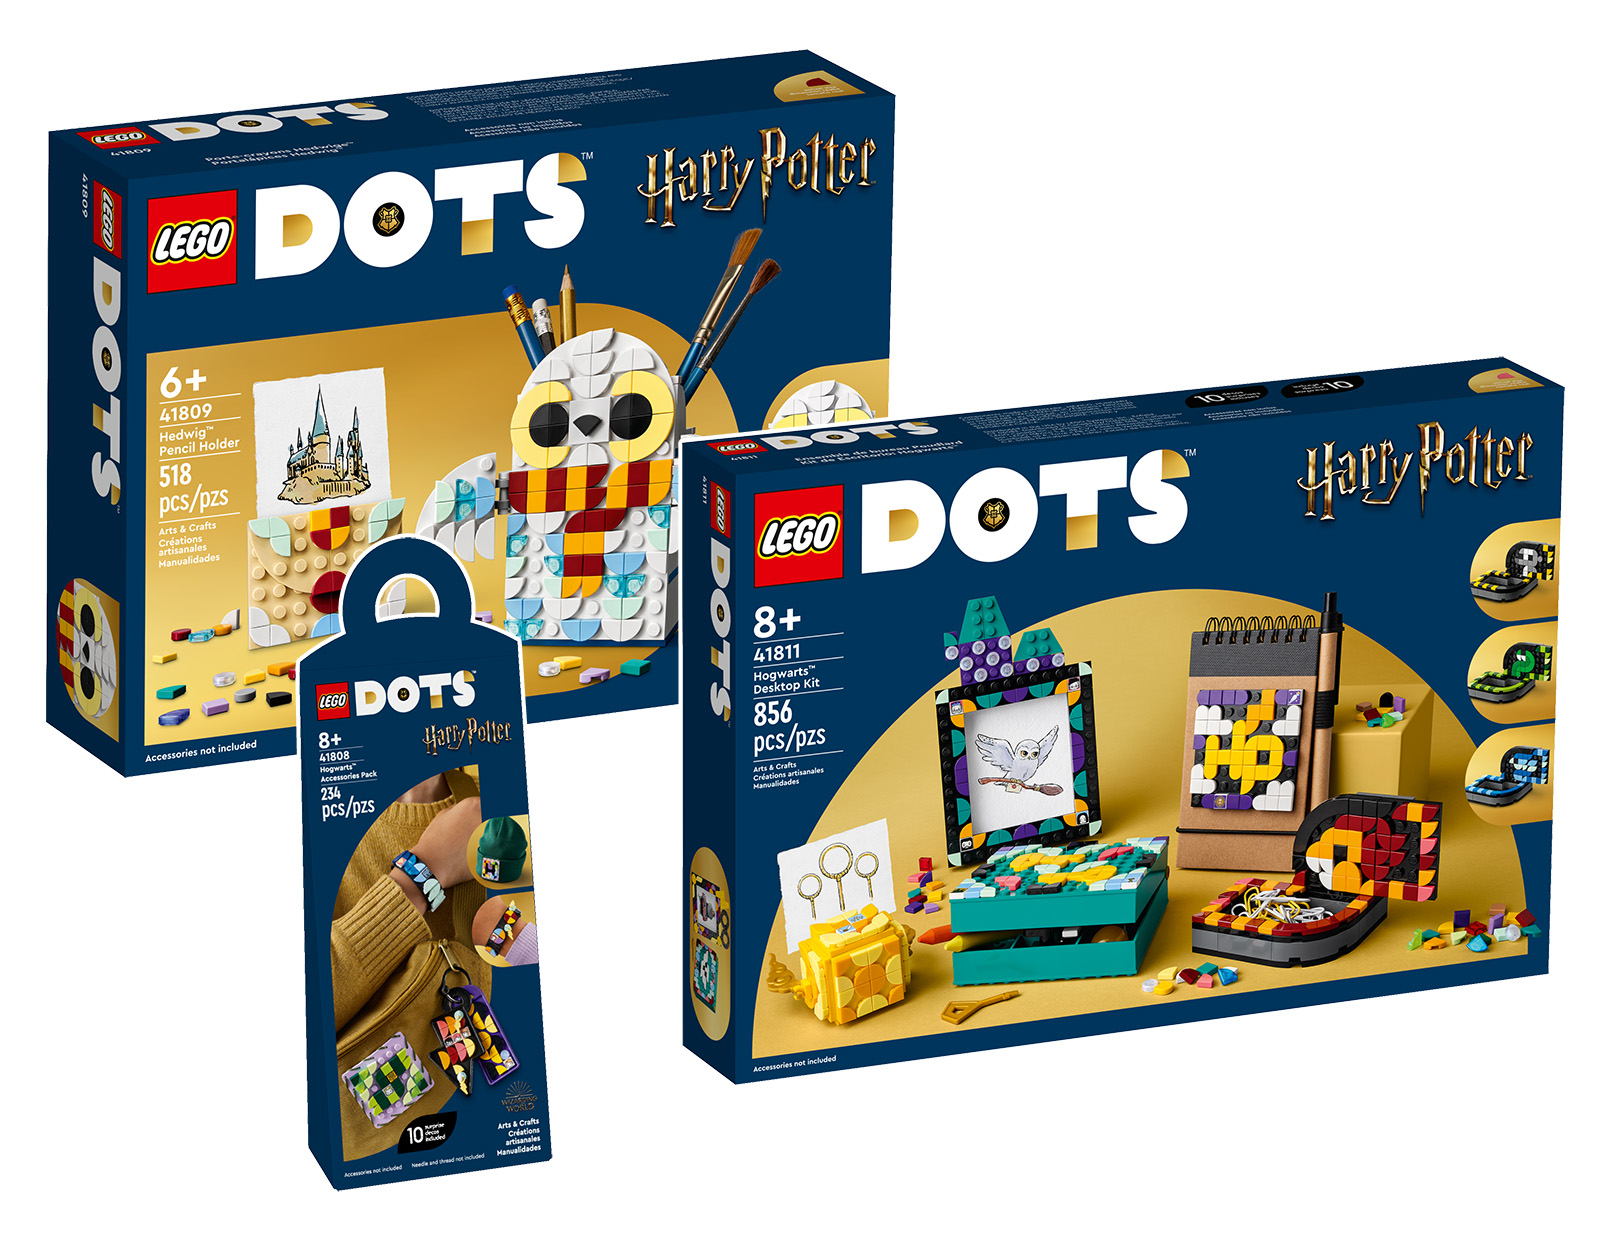 LEGO DOTS 2023 baru: tiga produk berlisensi Harry Potter sedang online di Toko